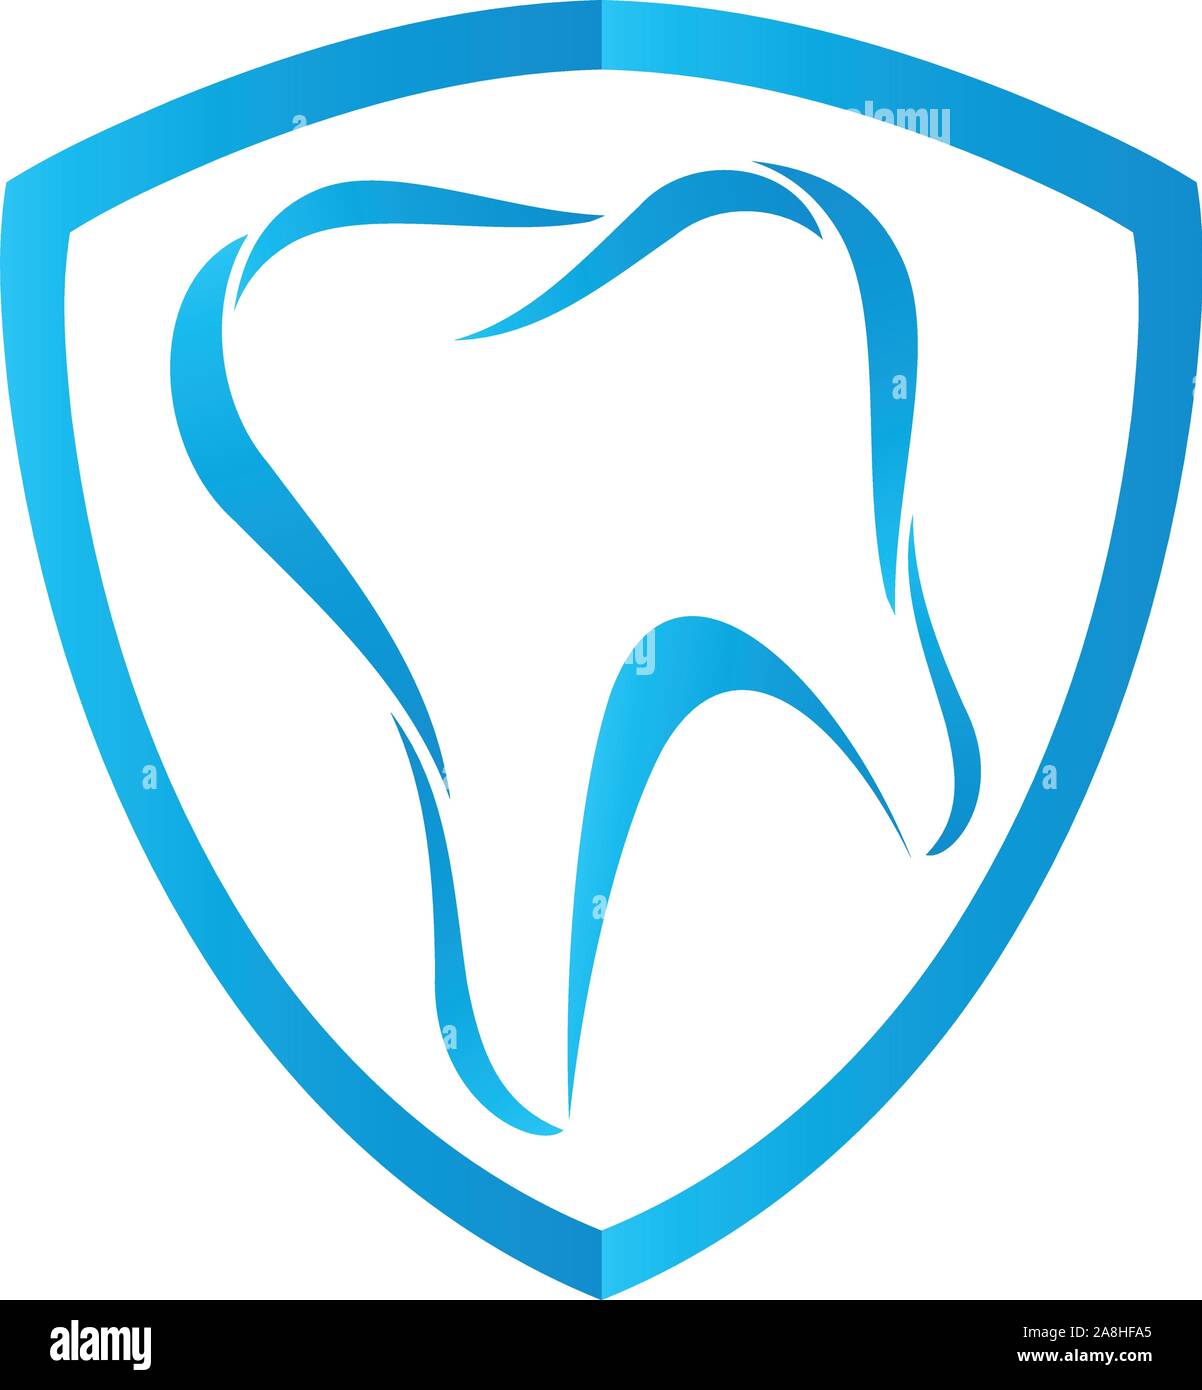 Tooth, dentist, dentistry, dental care, logo Stock Vector